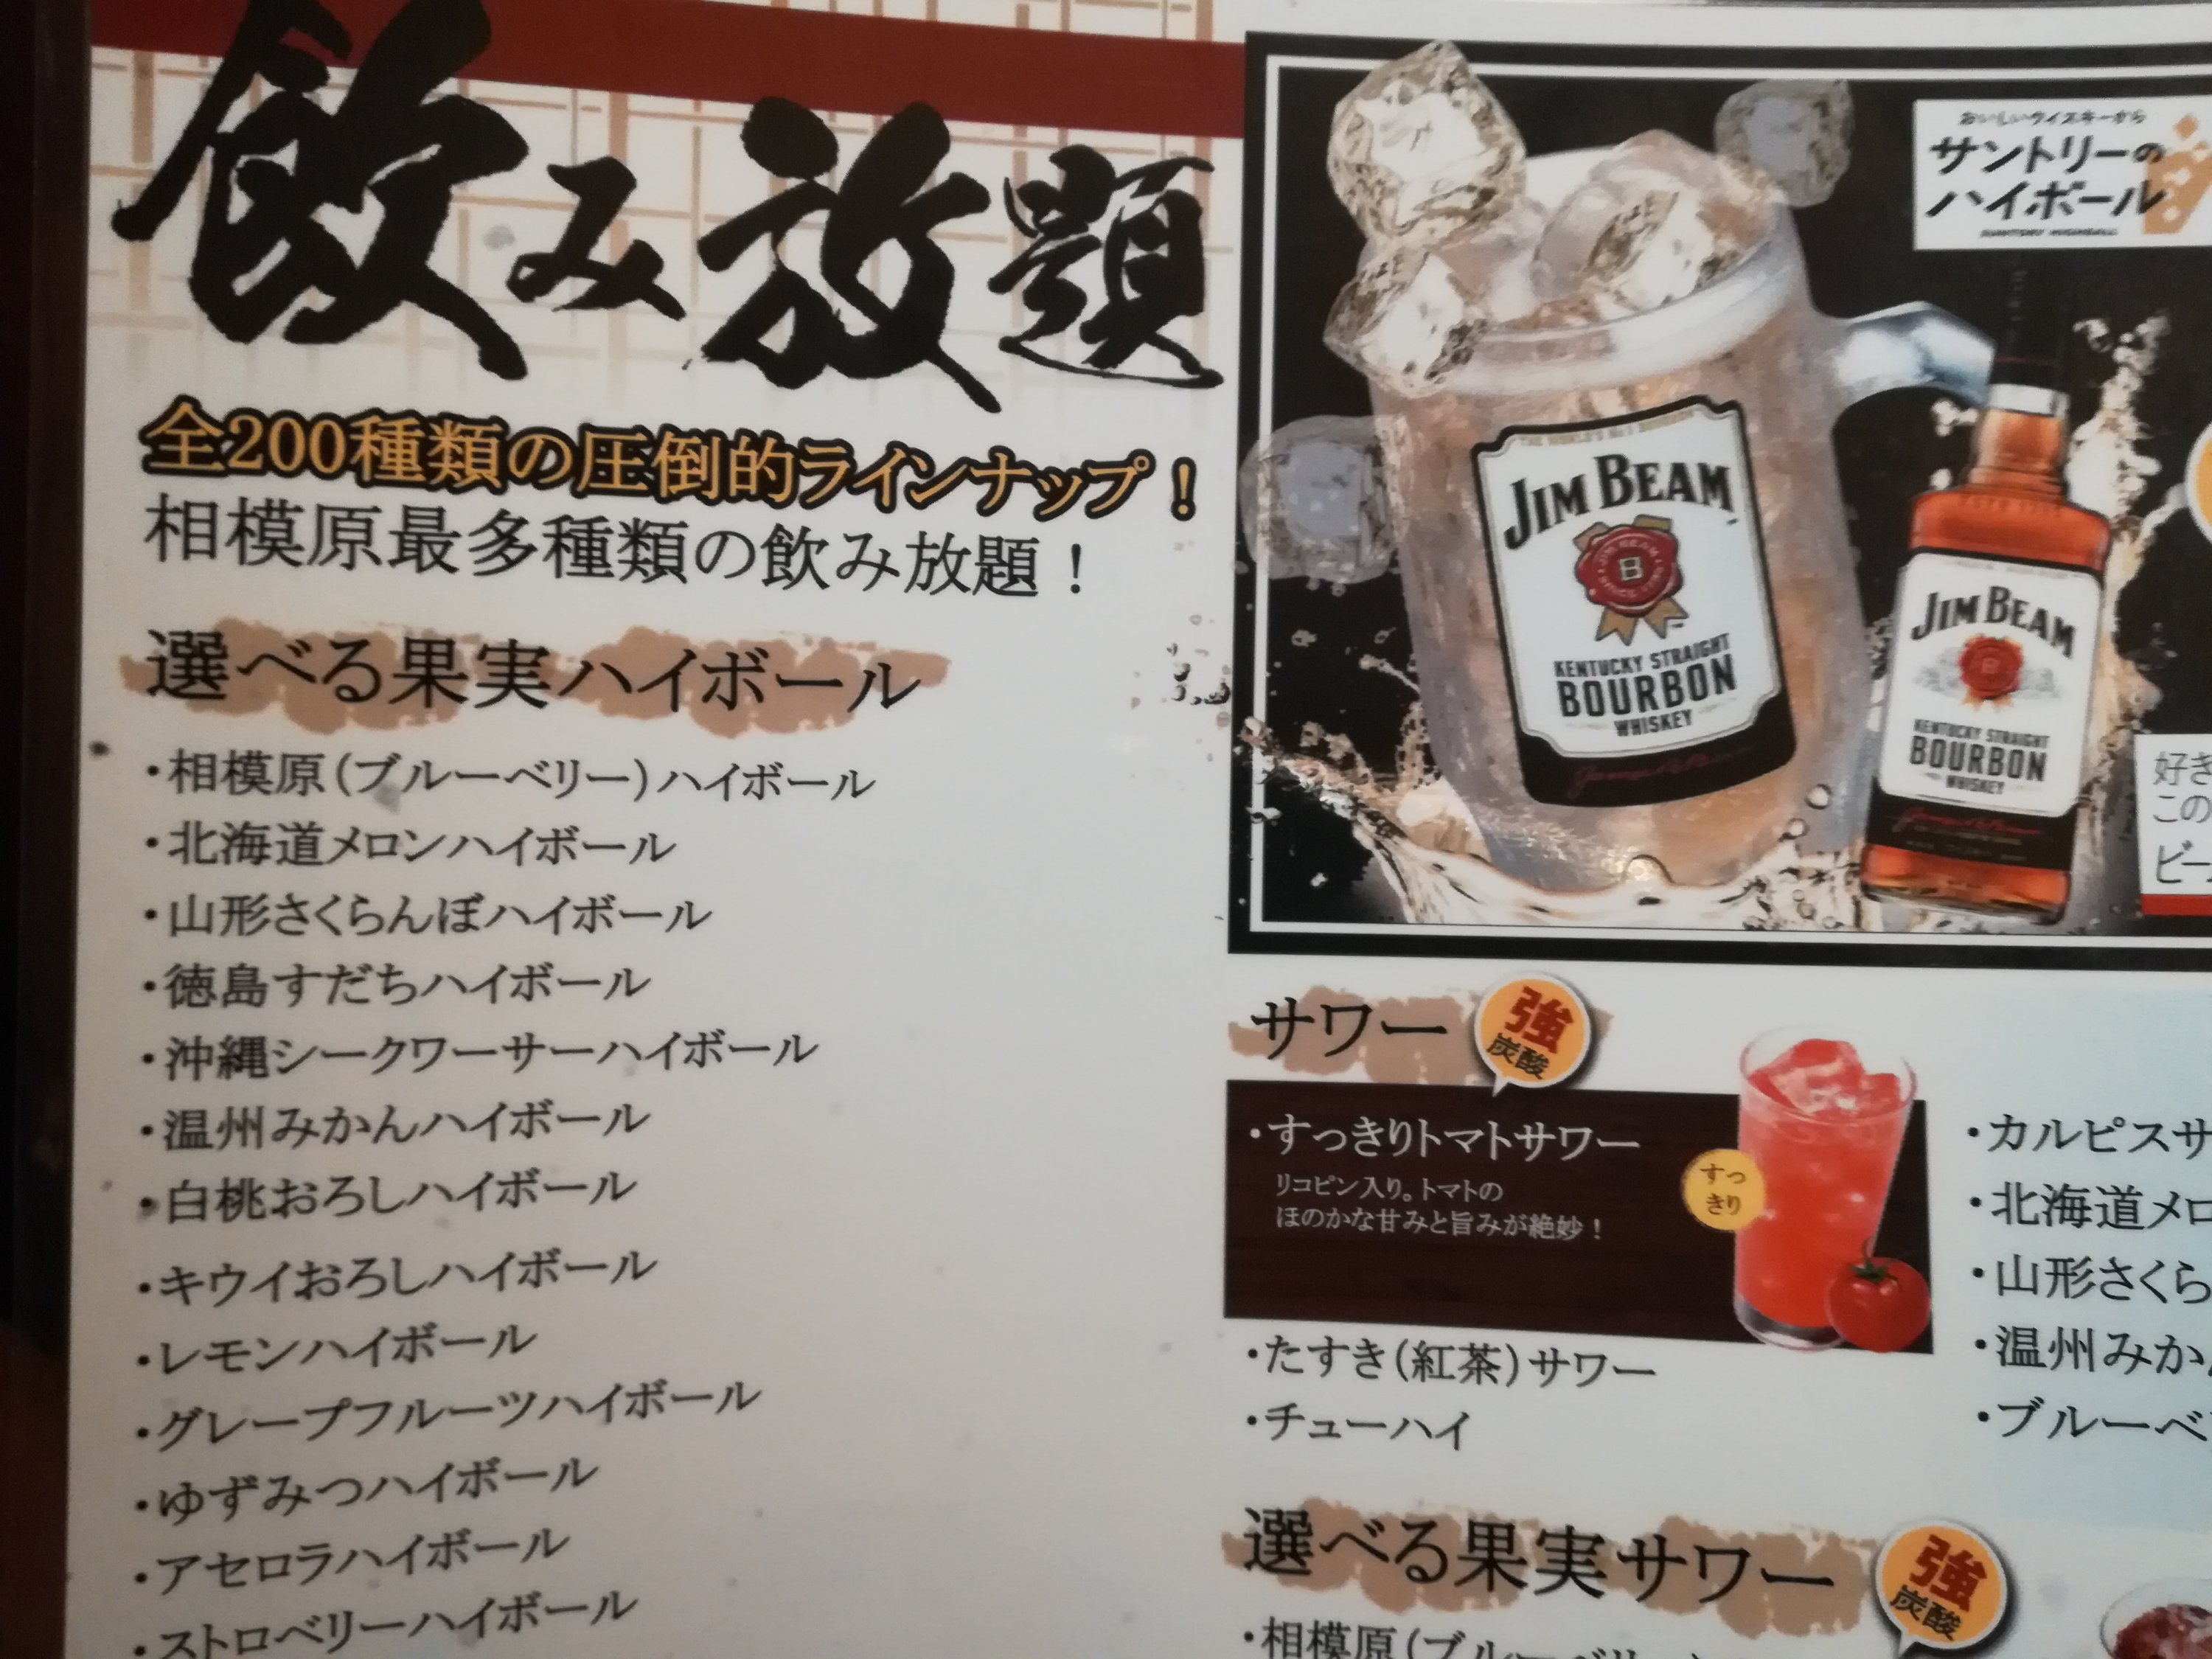 僕好みではないけど 横浜線相模原駅で個室居酒屋オシャレデートがしたいなら たすき で飲み放題はオススメです おじさんの日記ブログ